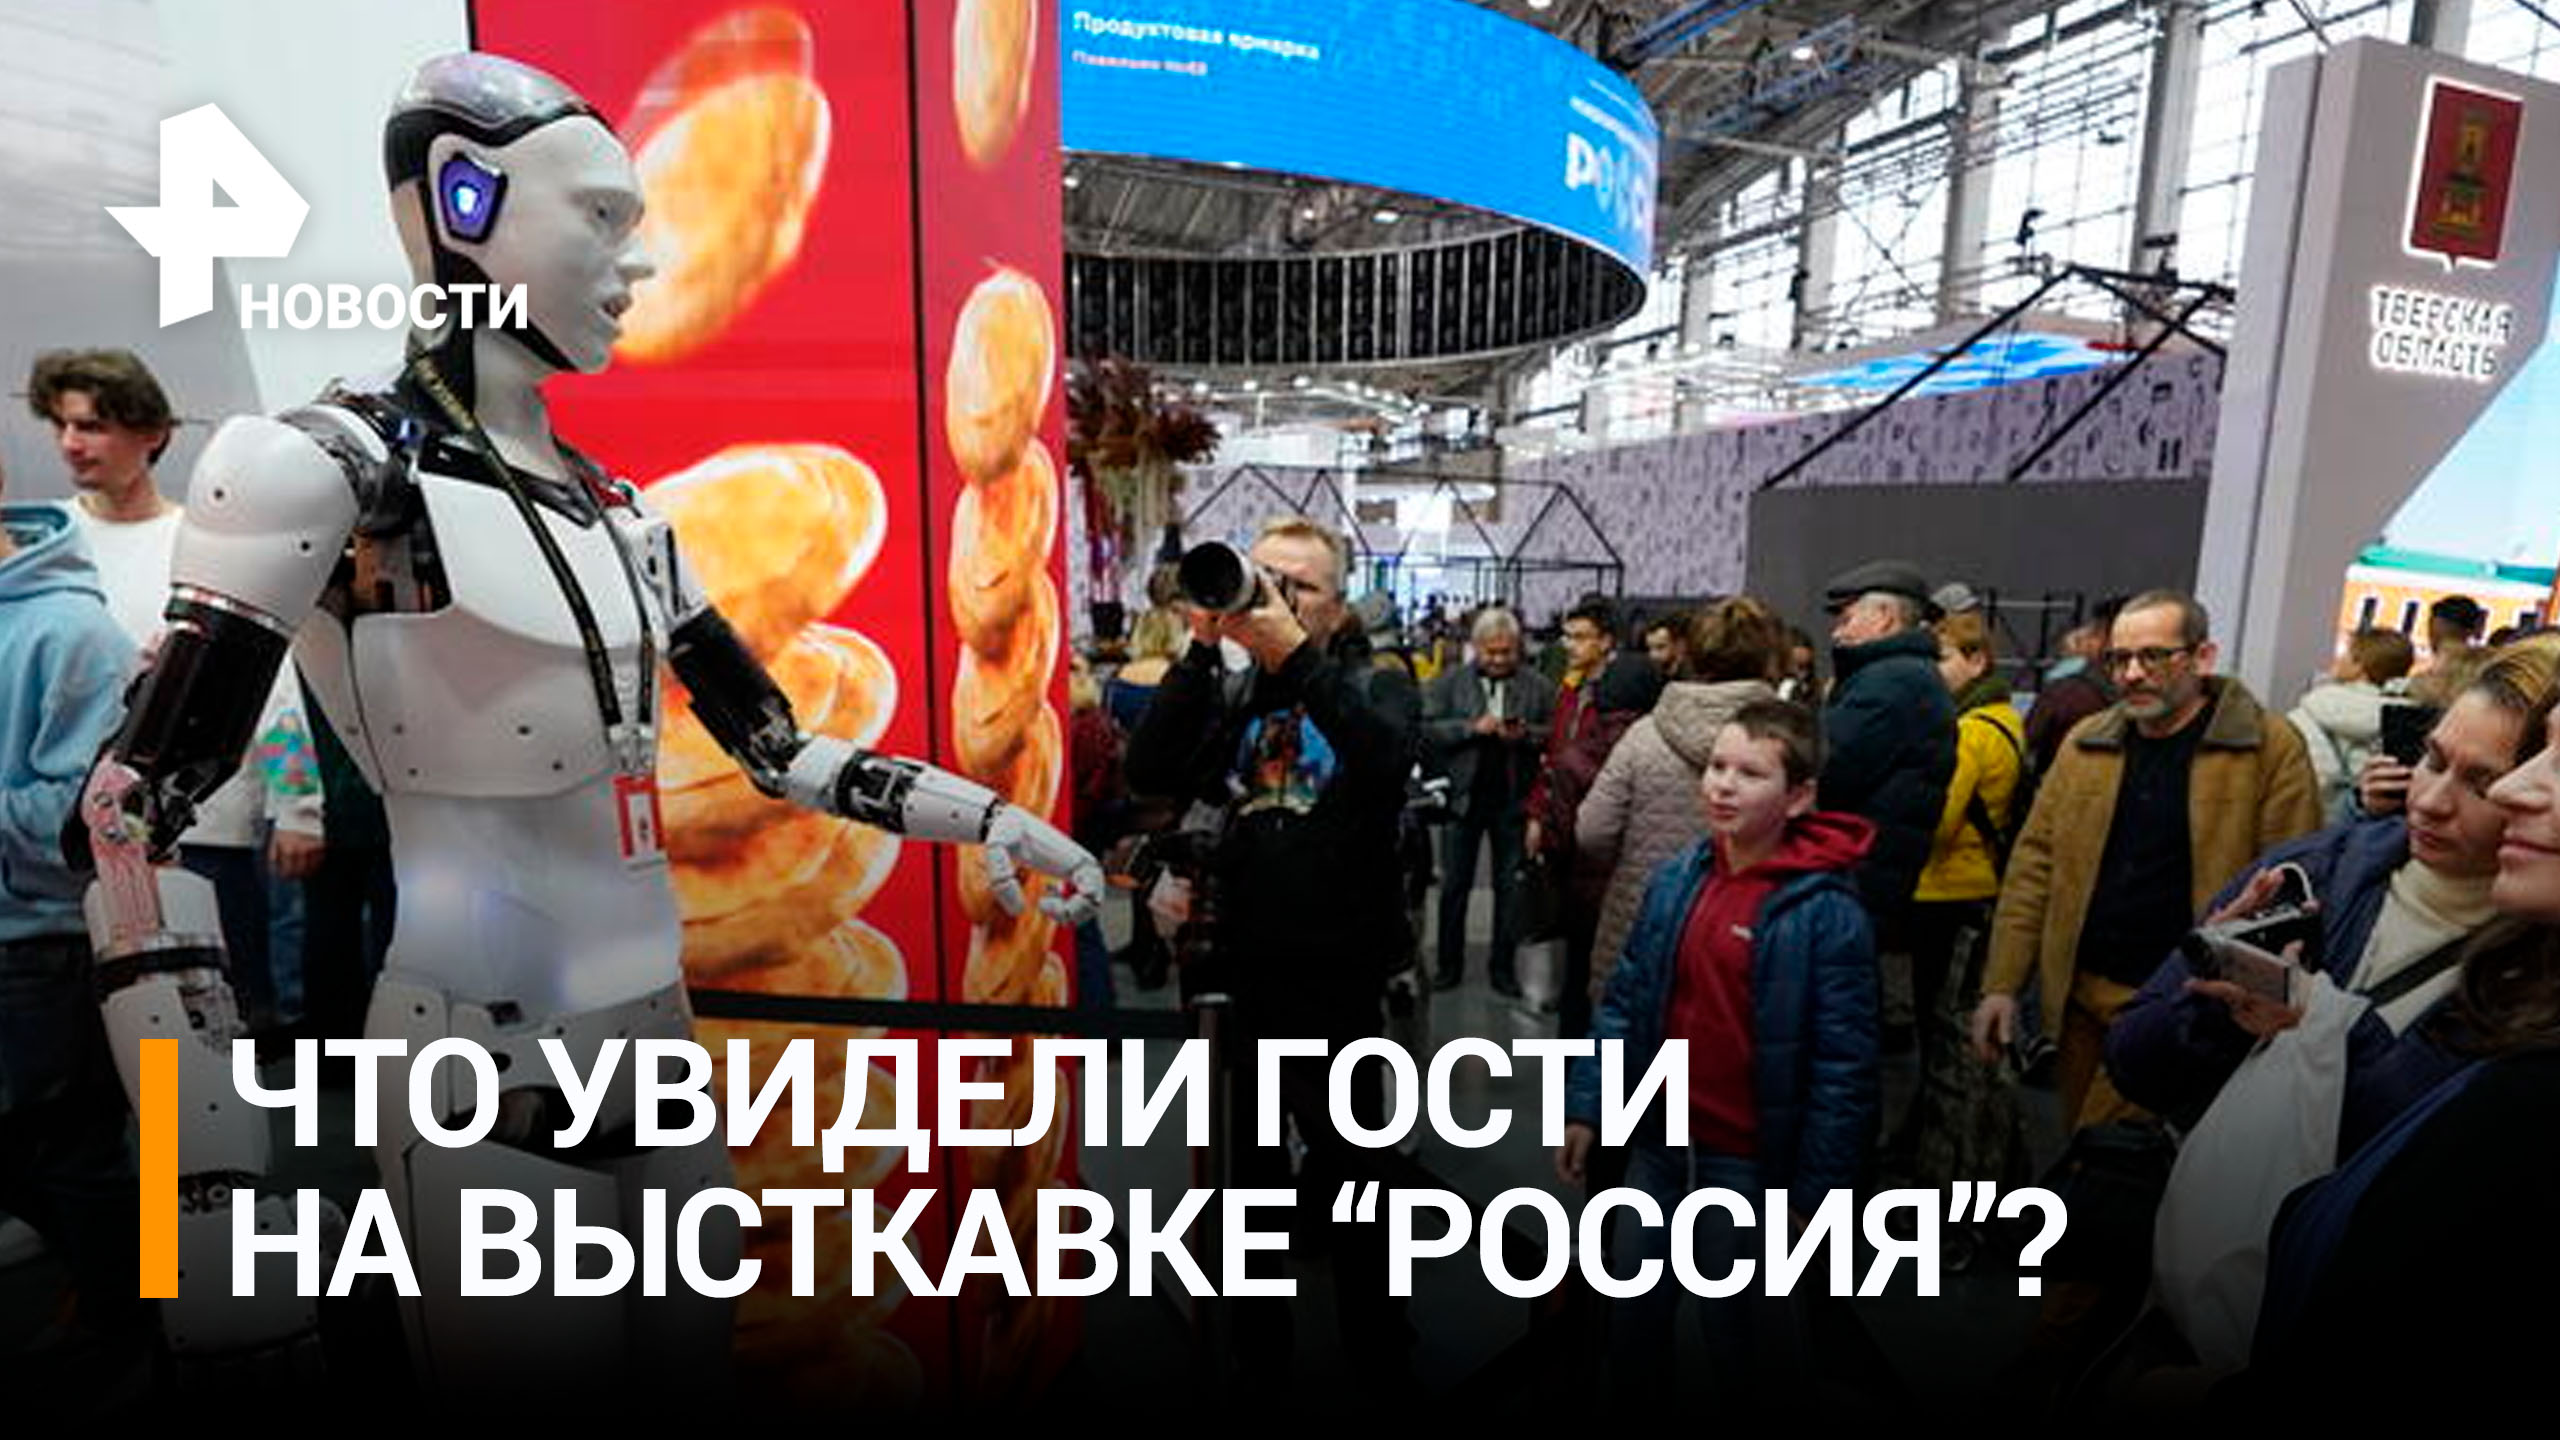 Гости выставки "Россия" активно регистрируются на экскурсии и концерты / РЕН Новости